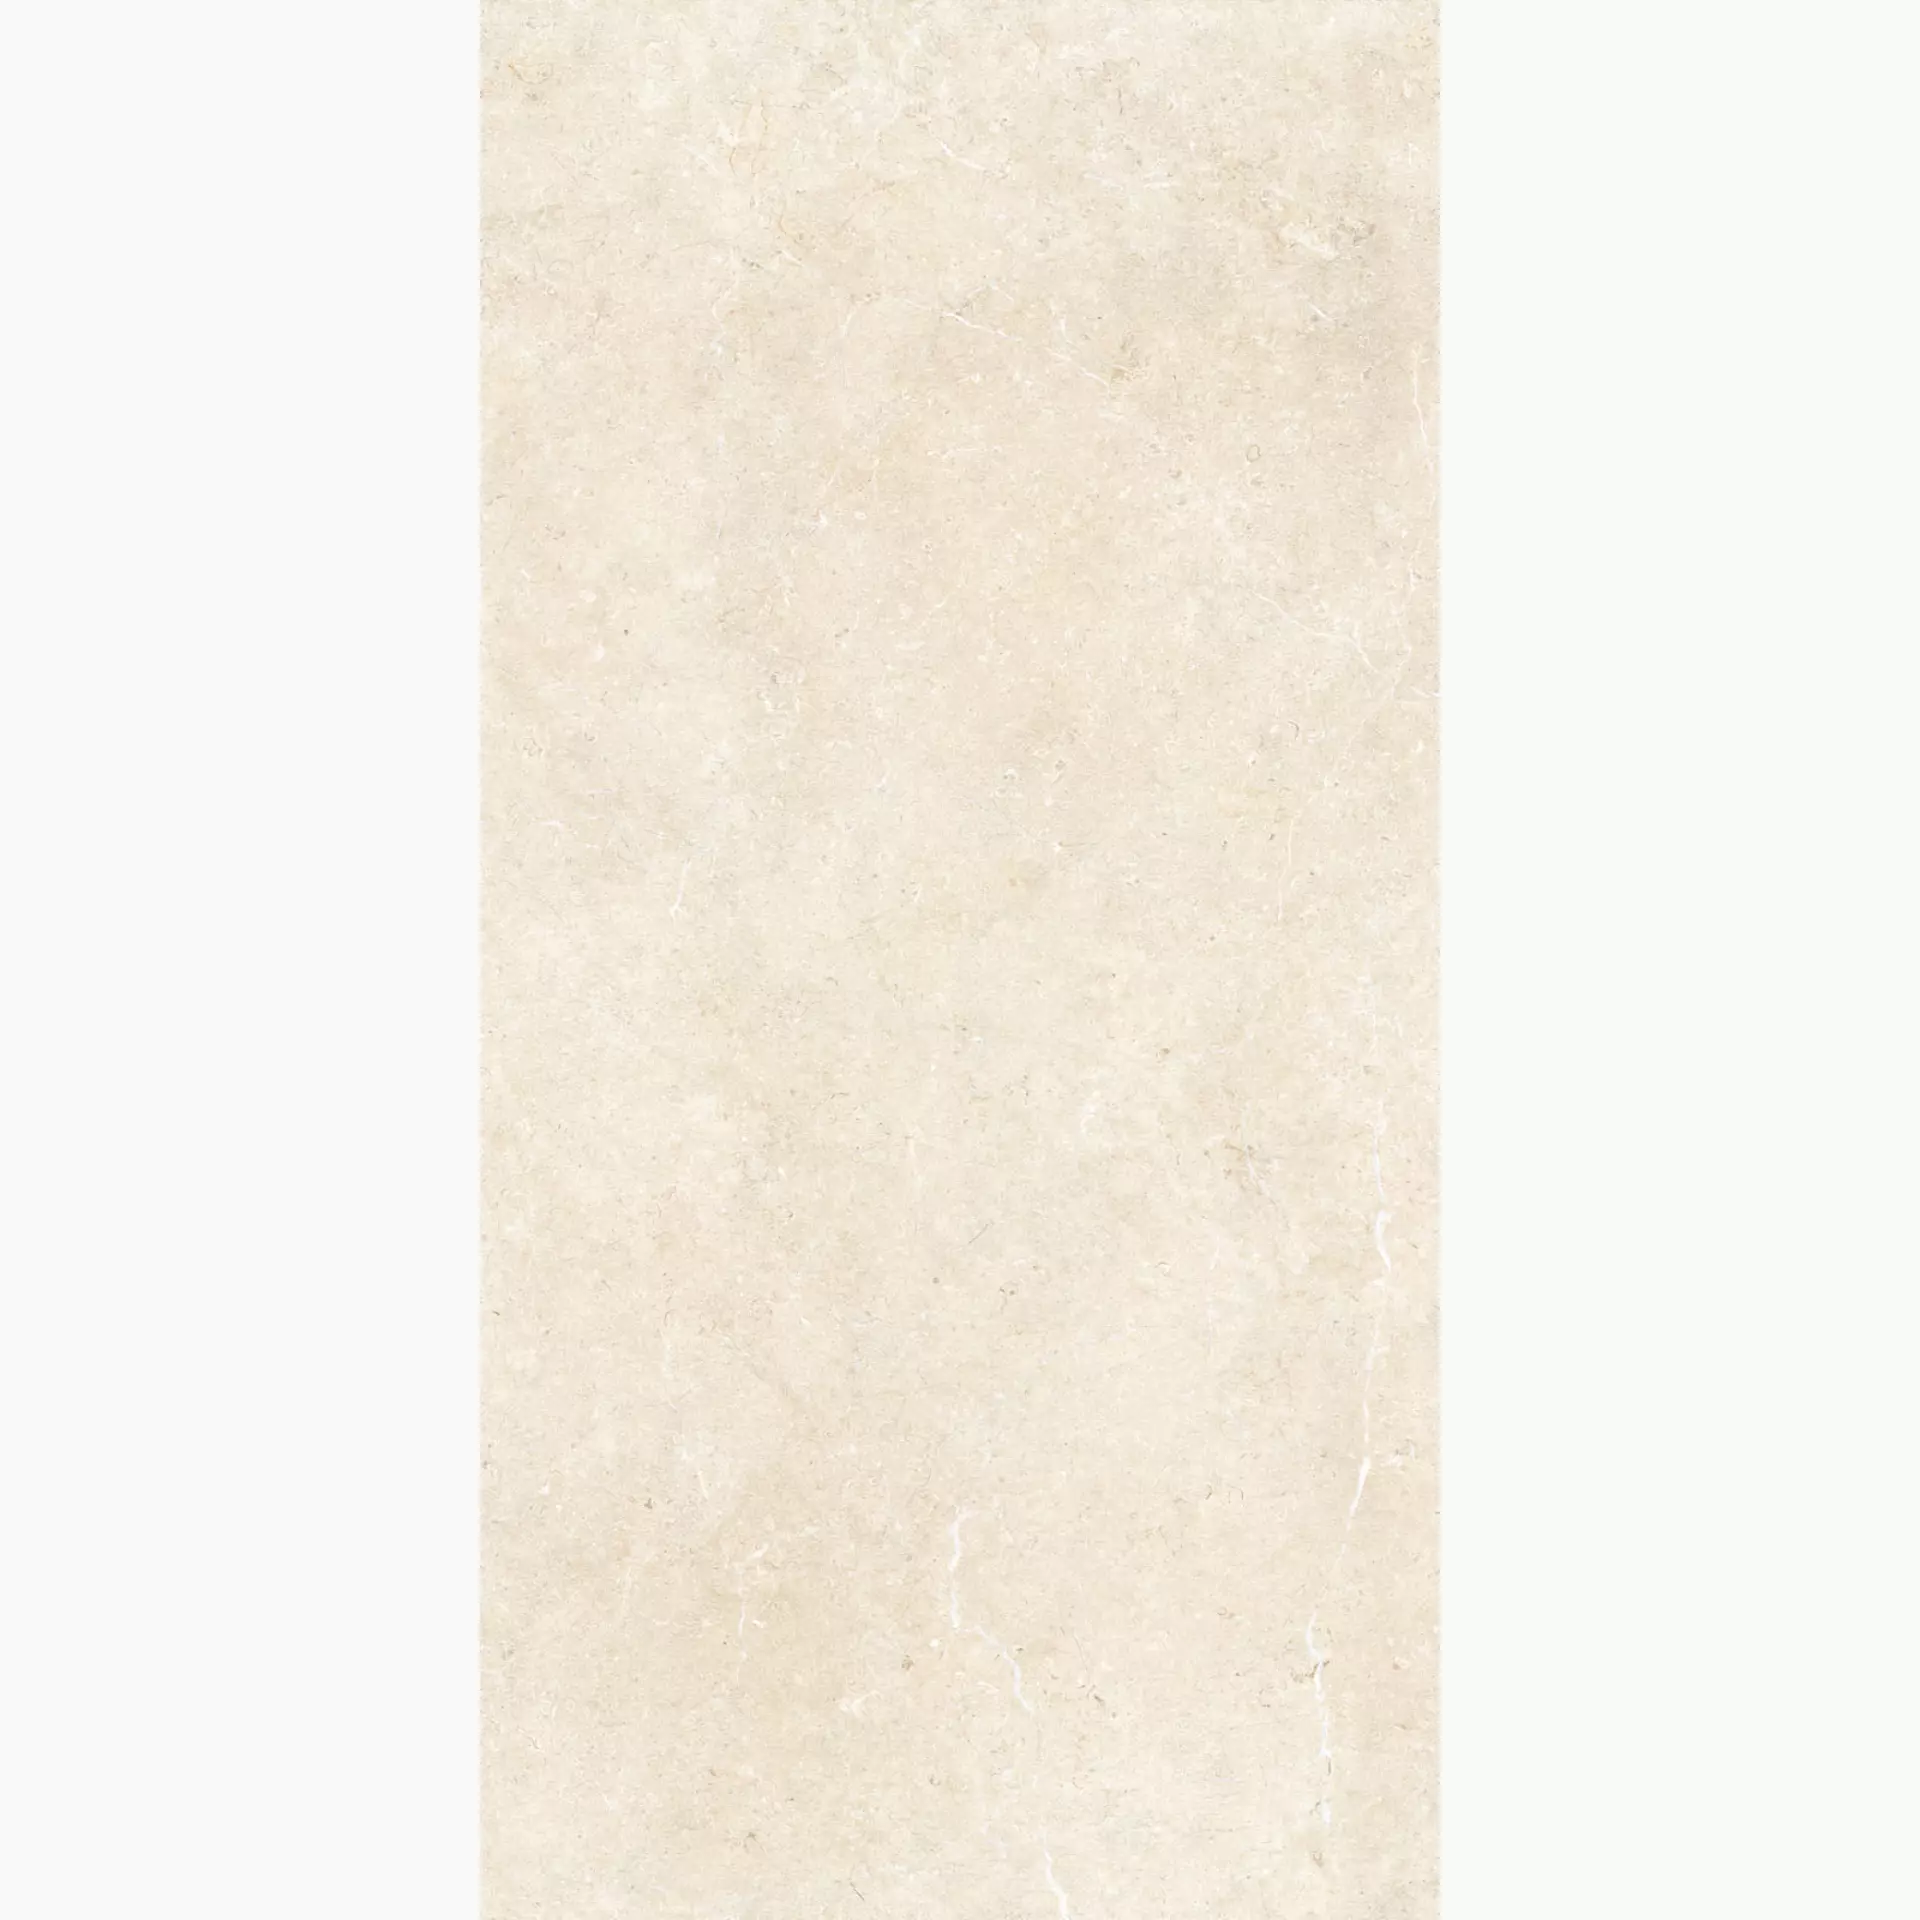 Marazzi Mystone Limestone Ivory Naturale – Matt M7E3 75x150cm rectified 9,5mm